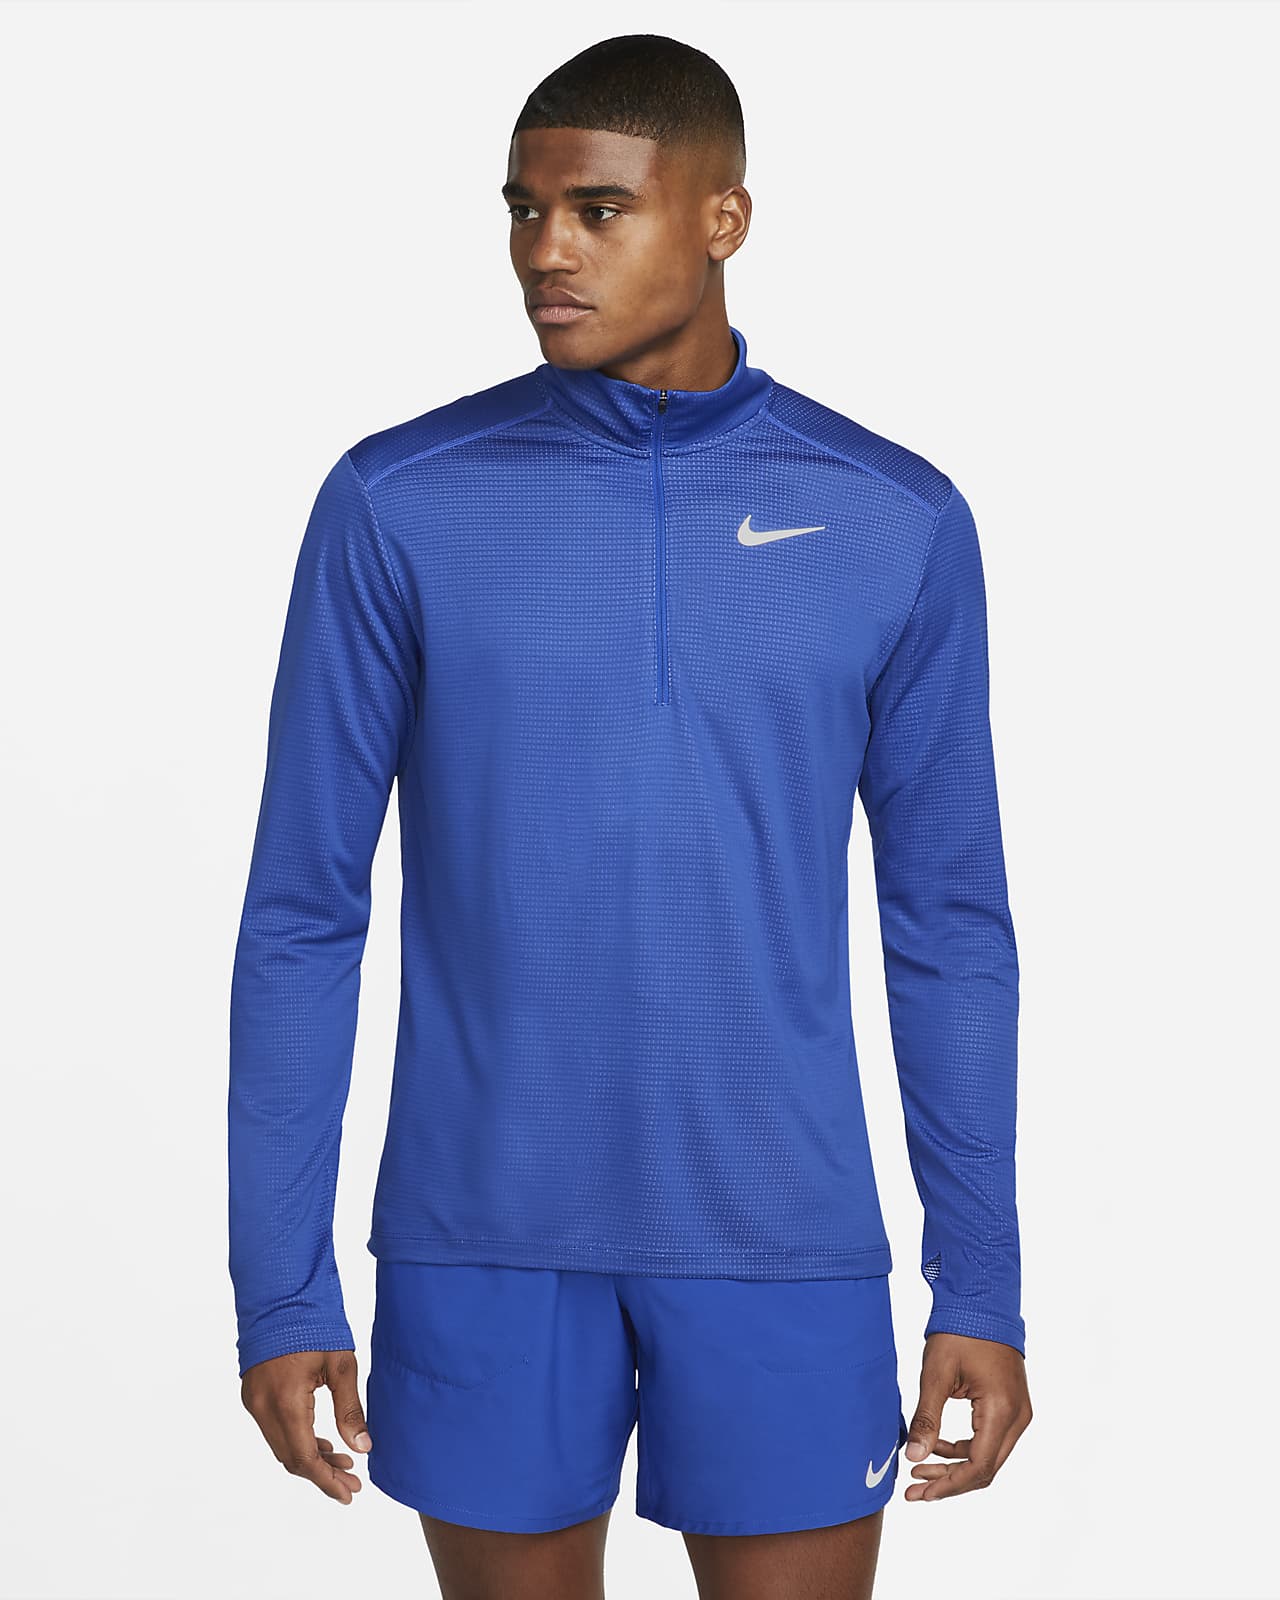 Nike Pacer Herren-Laufoberteil mit Halbreißverschluss